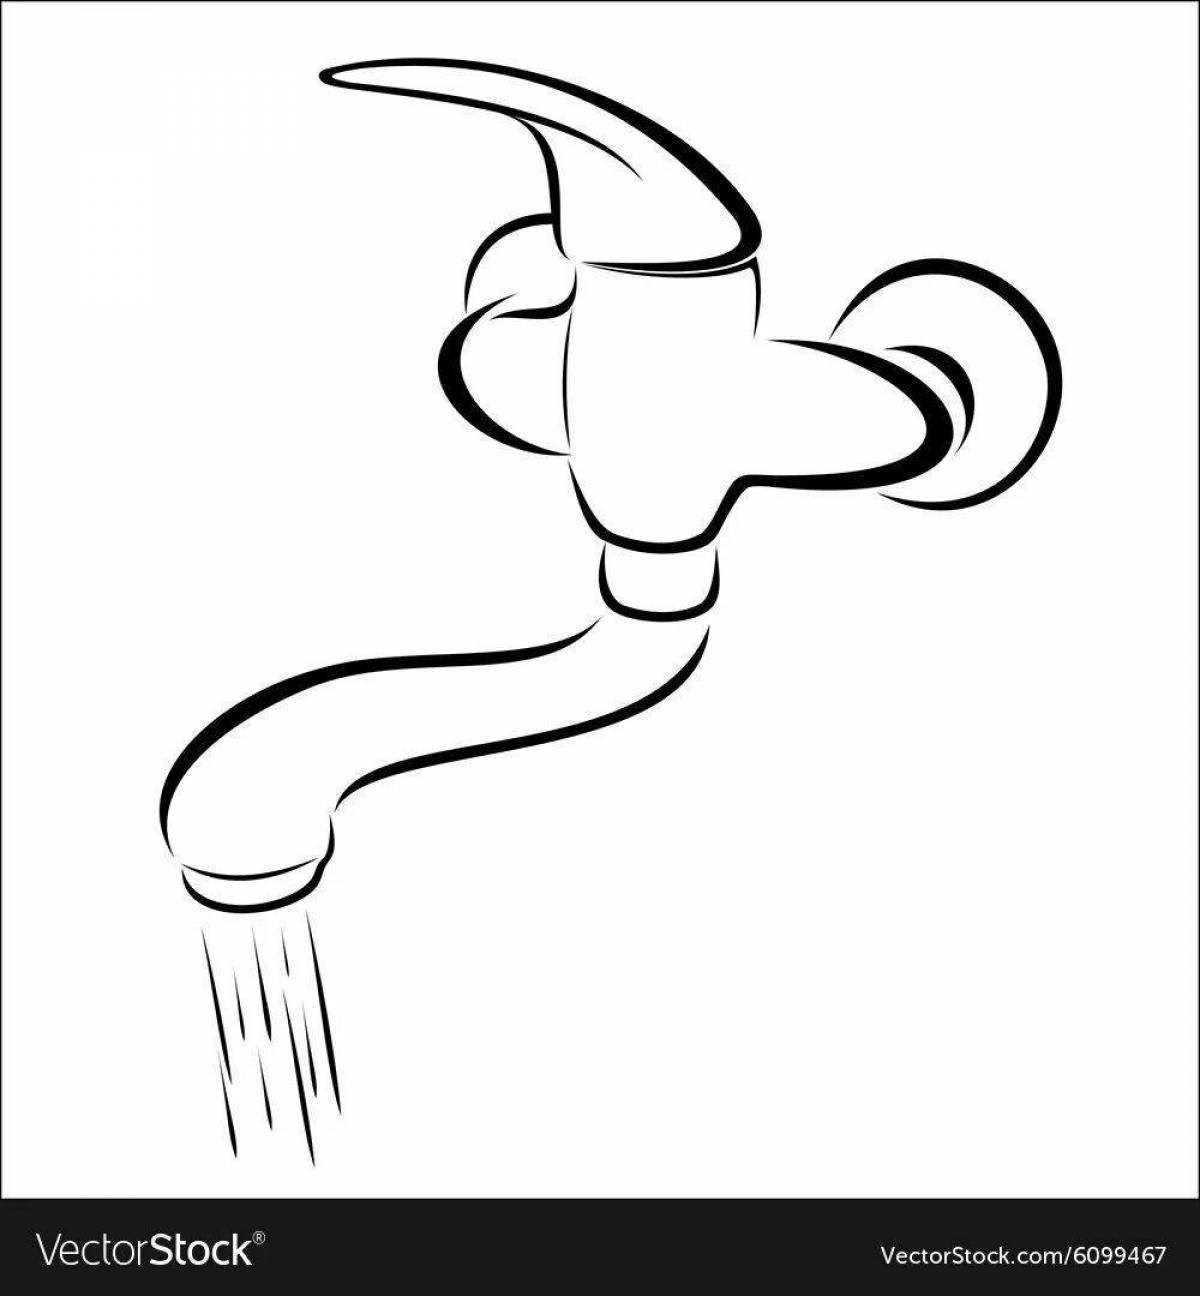 Children's water faucet #12